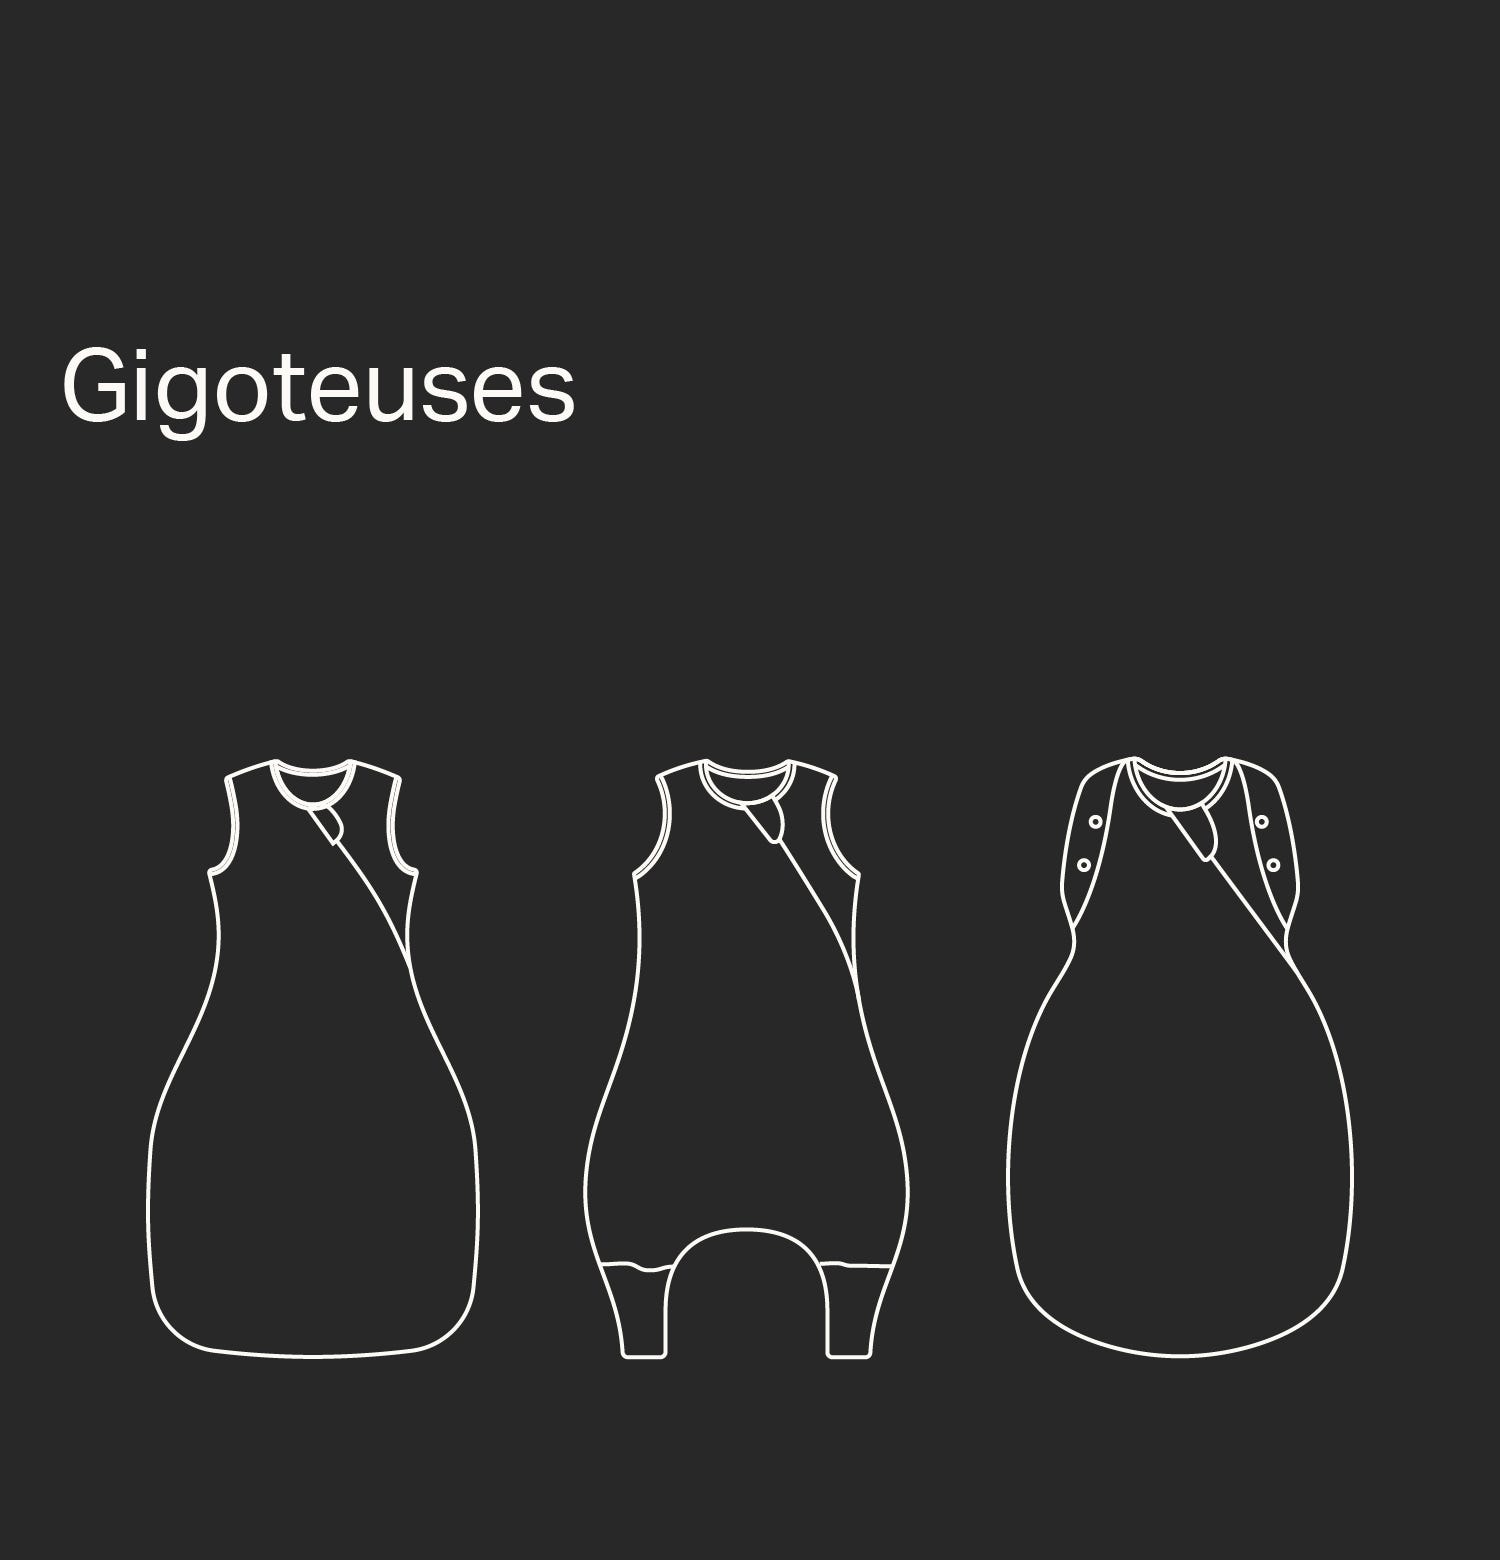 Gigoteuses